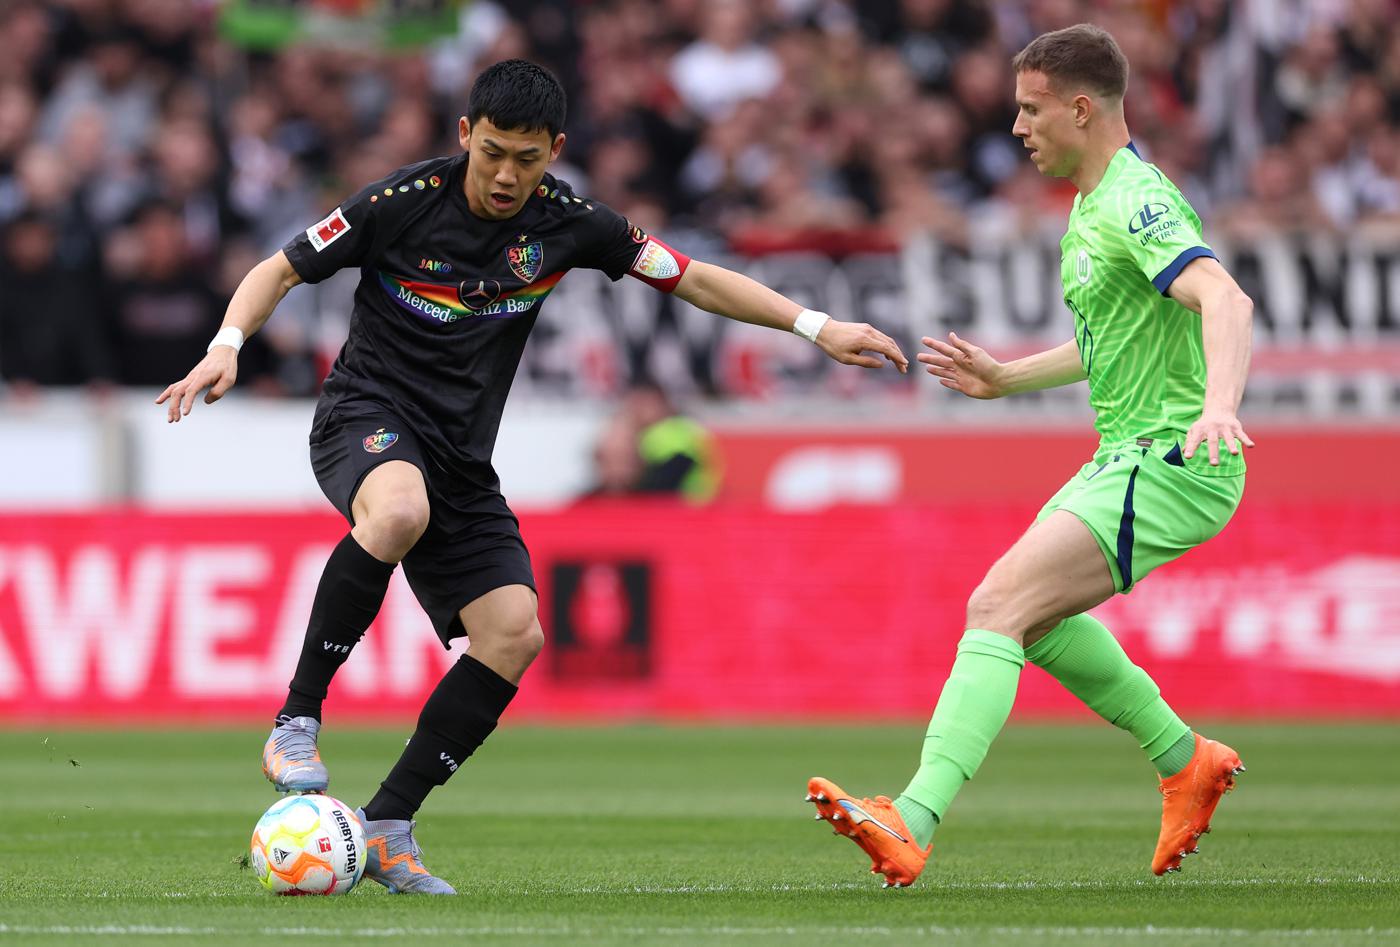 Stuttgart gegen Wolfsburg - 0-1. Deutsche Meisterschaft, 25. Runde. Spielbericht, Statistik.